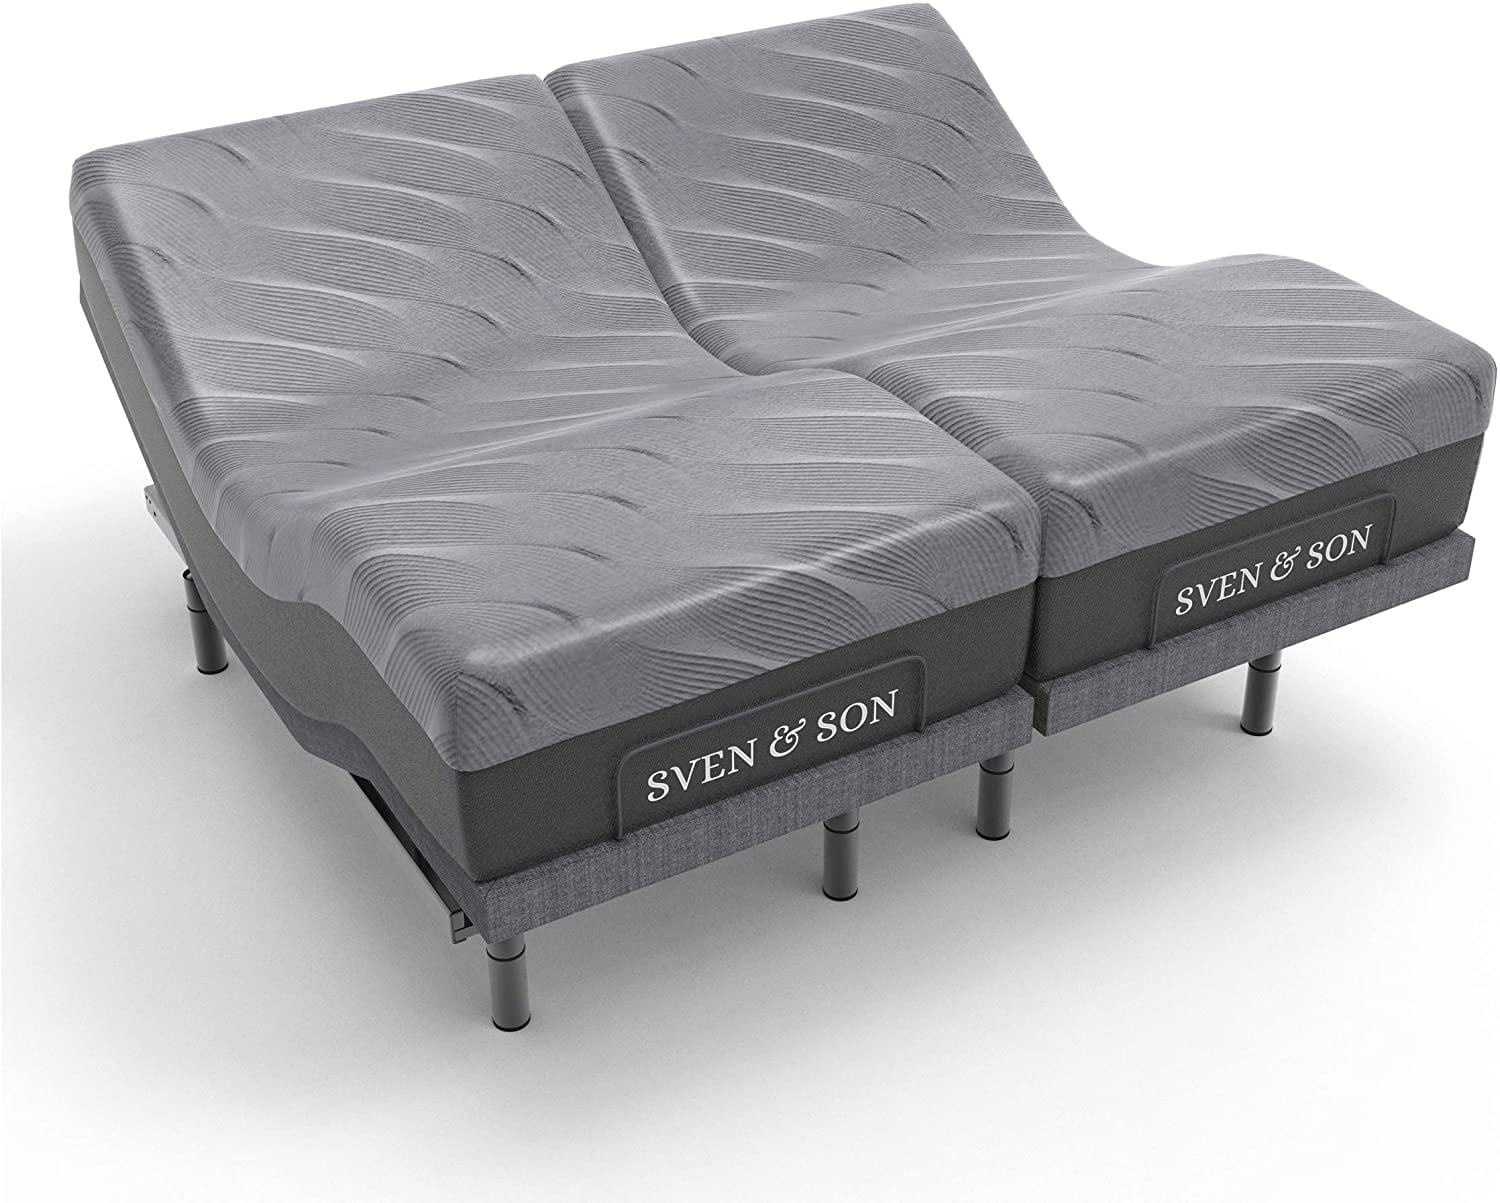 Sven Son Split King Adjustable Bed, Best Adjustable Bed Frame For Heavy Person